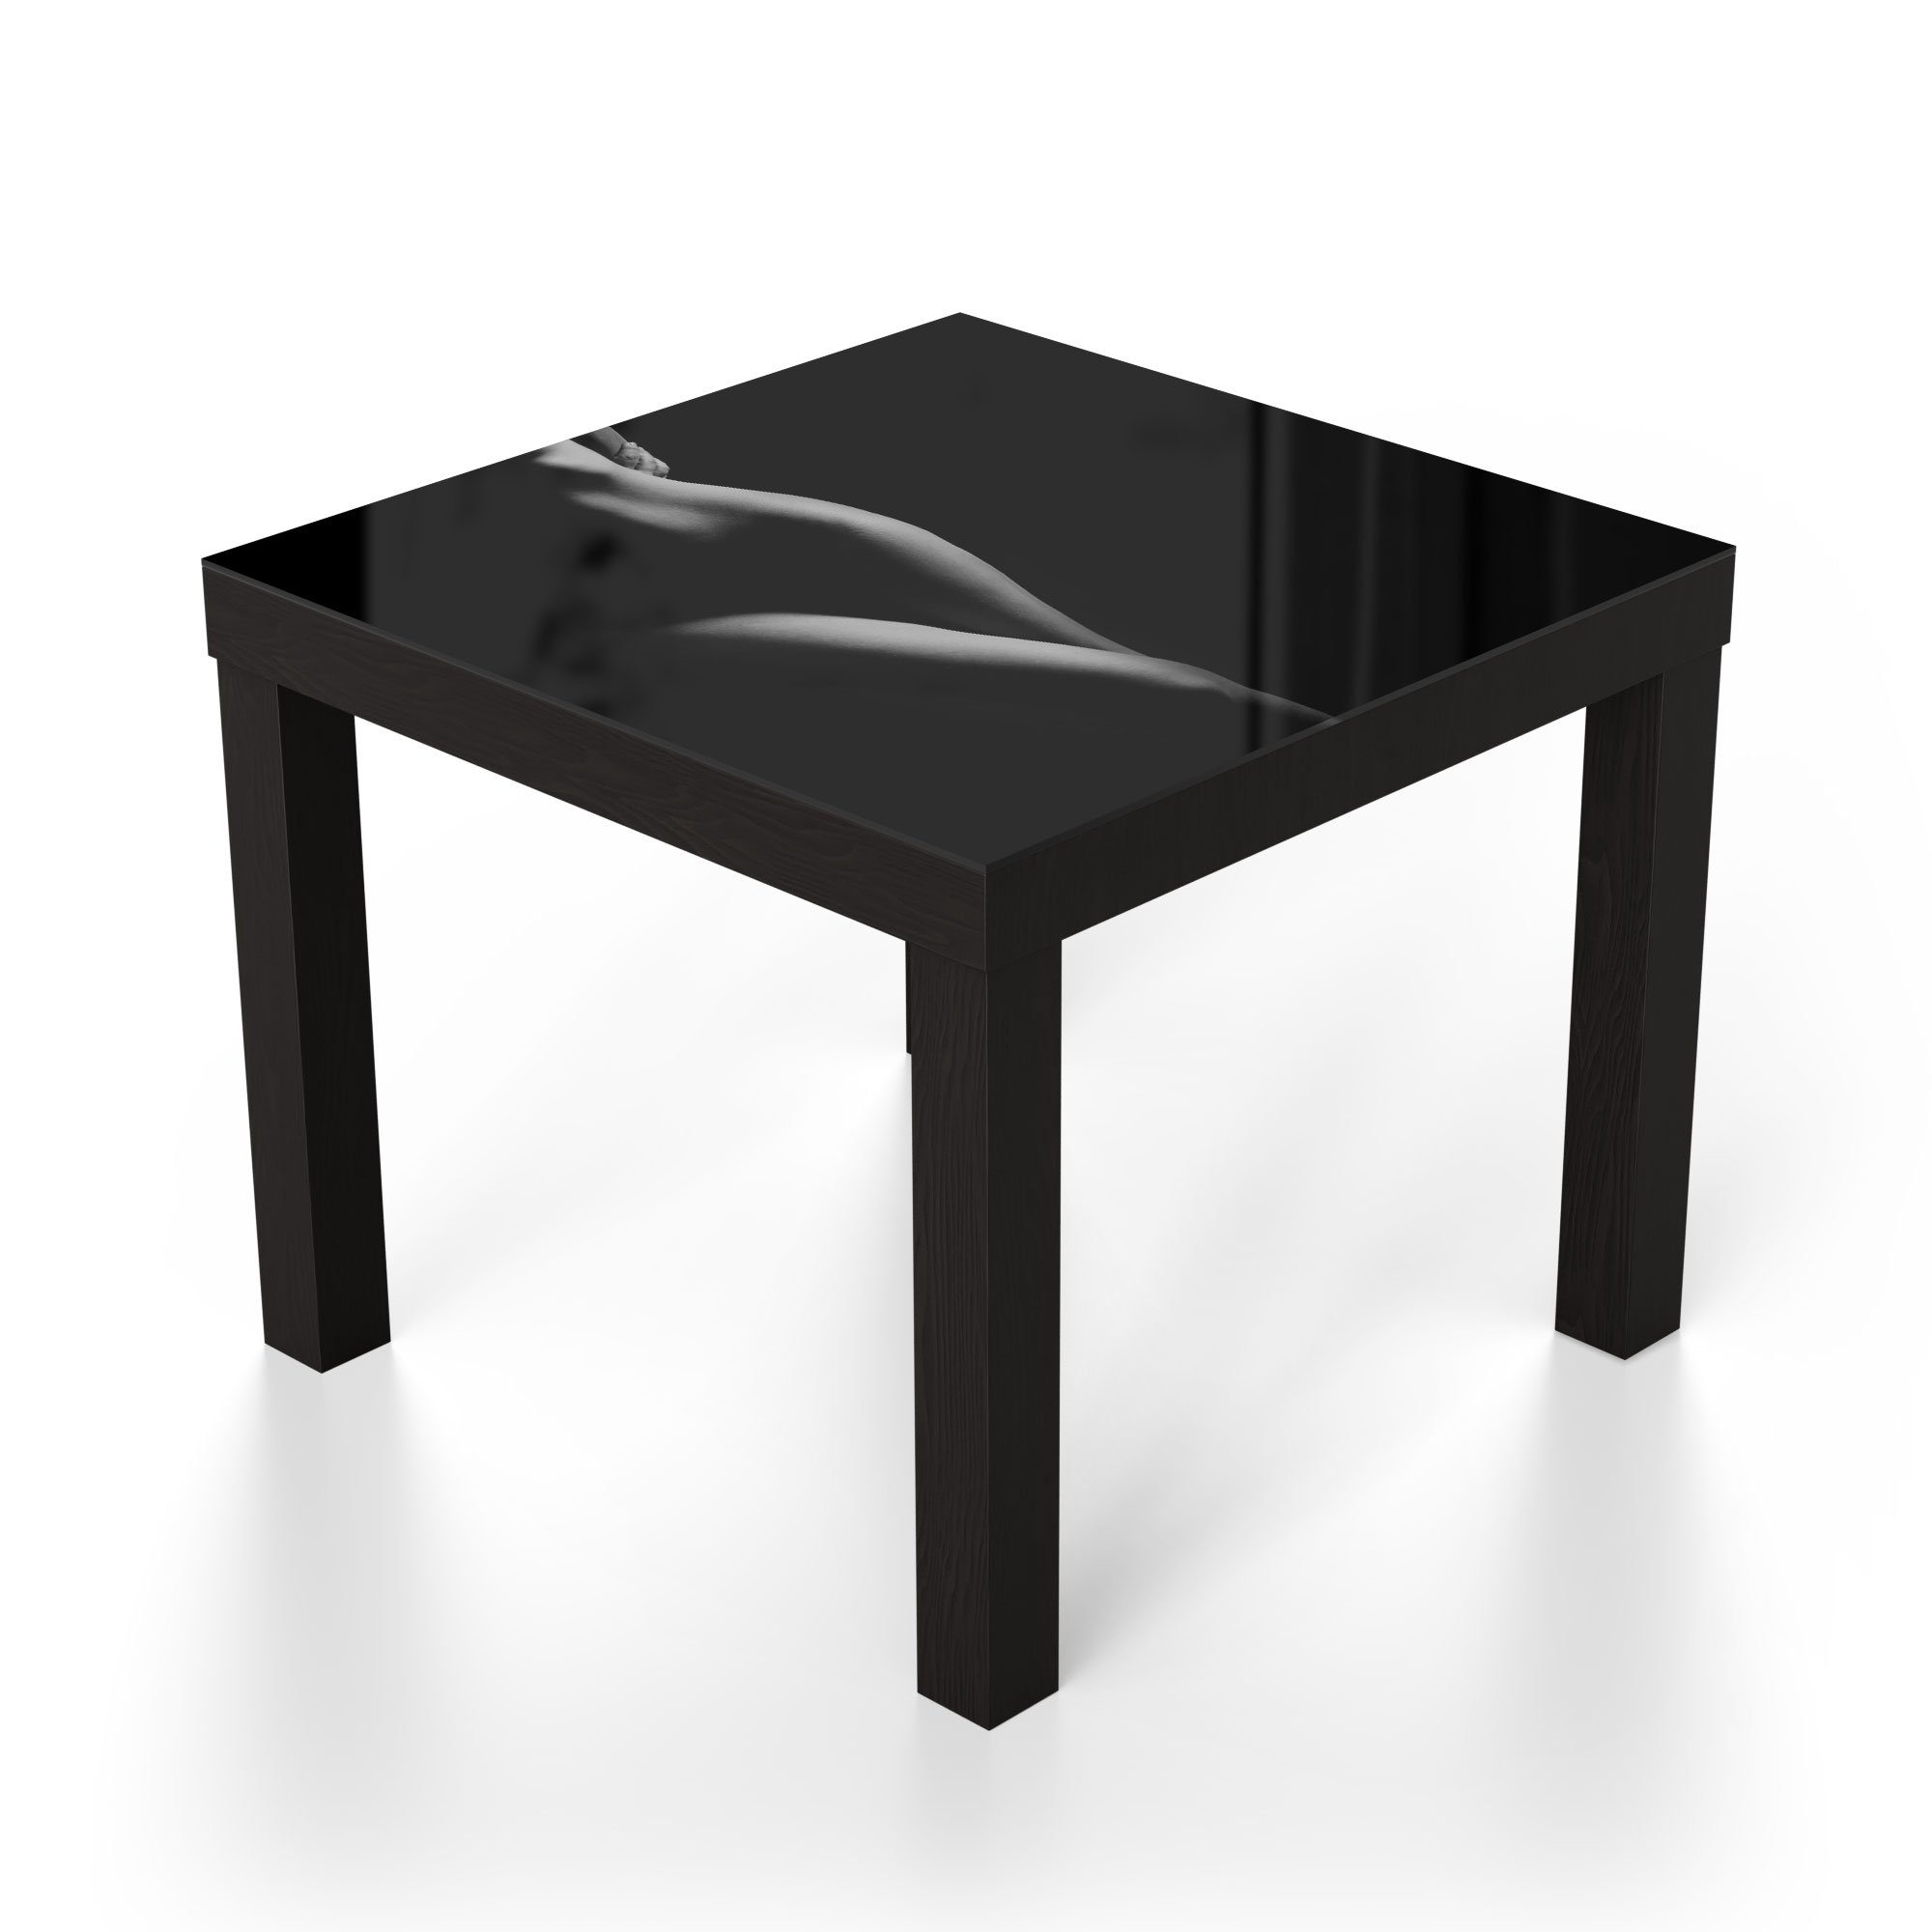 'Weibliche Beistelltisch DEQORI Couchtisch Glastisch Kurven', Schwarz Glas modern